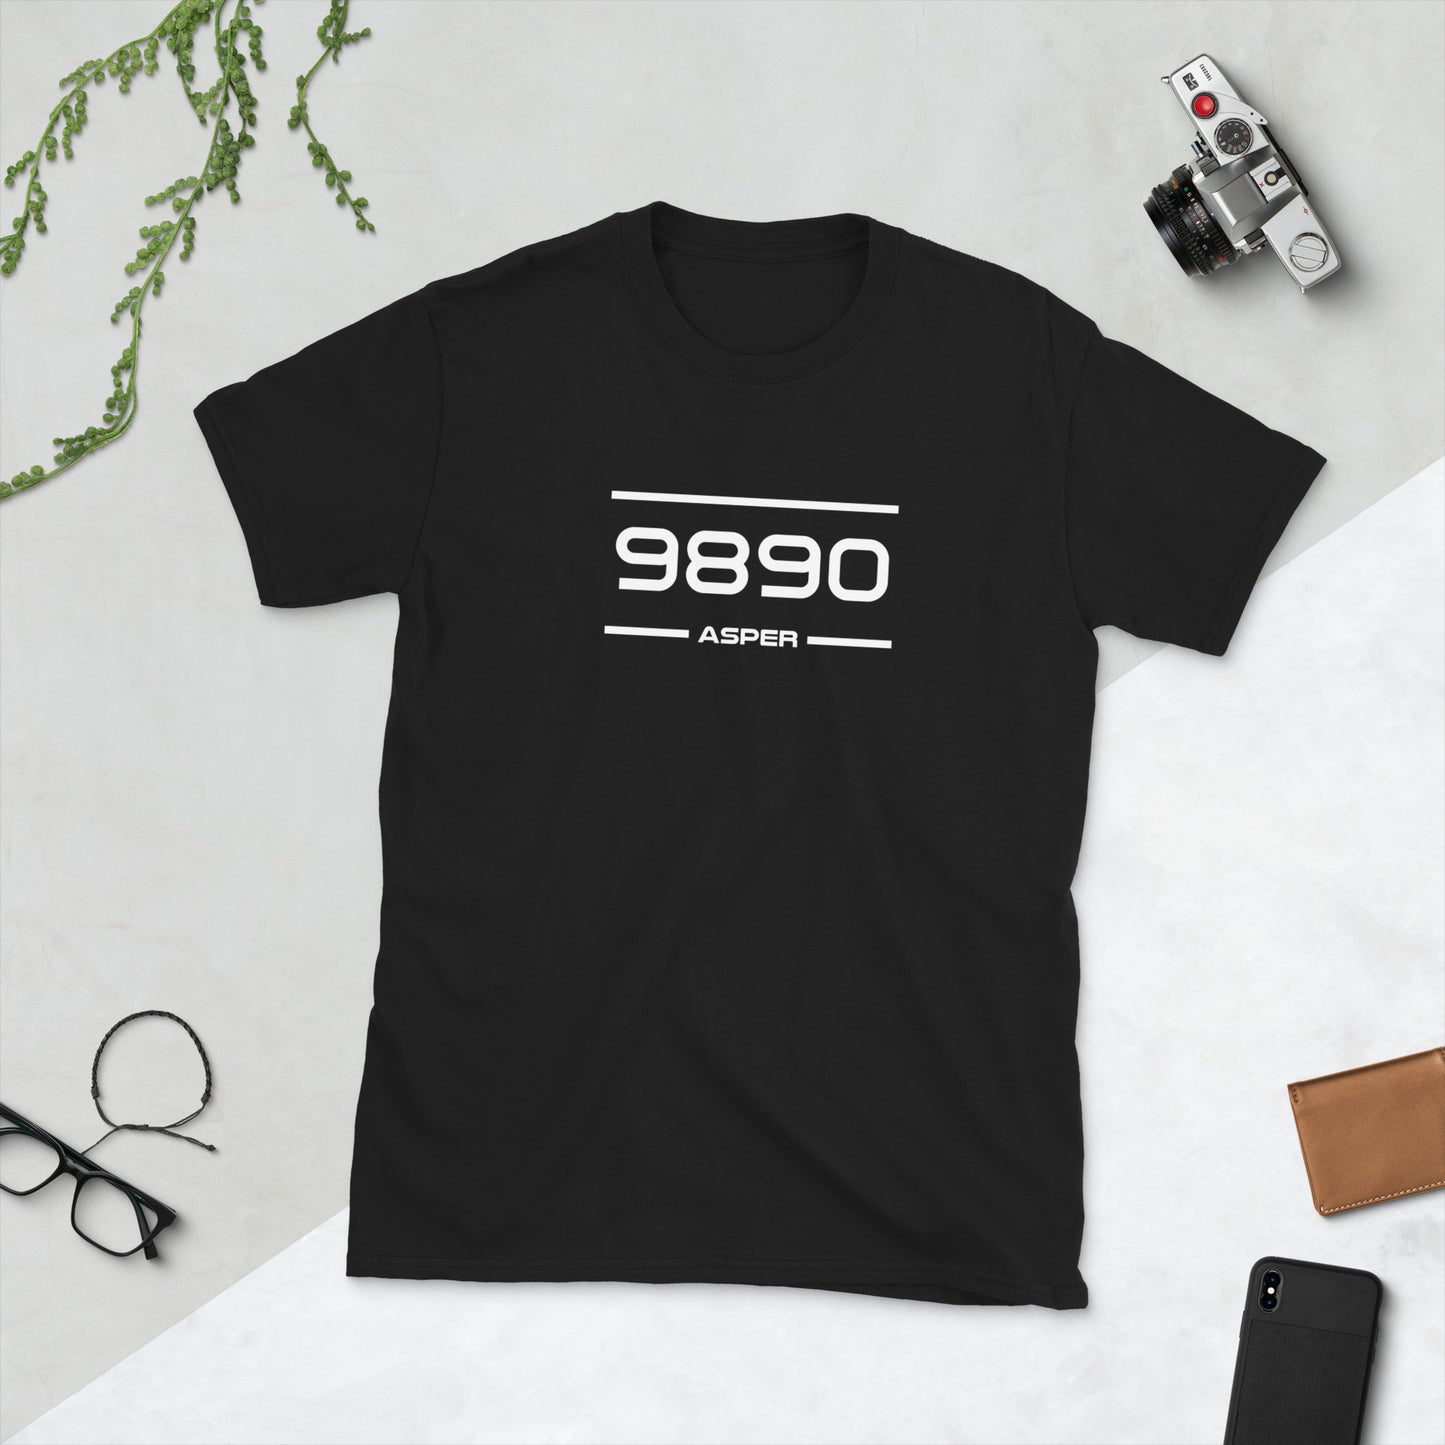 Tshirt - 9890 - Asper